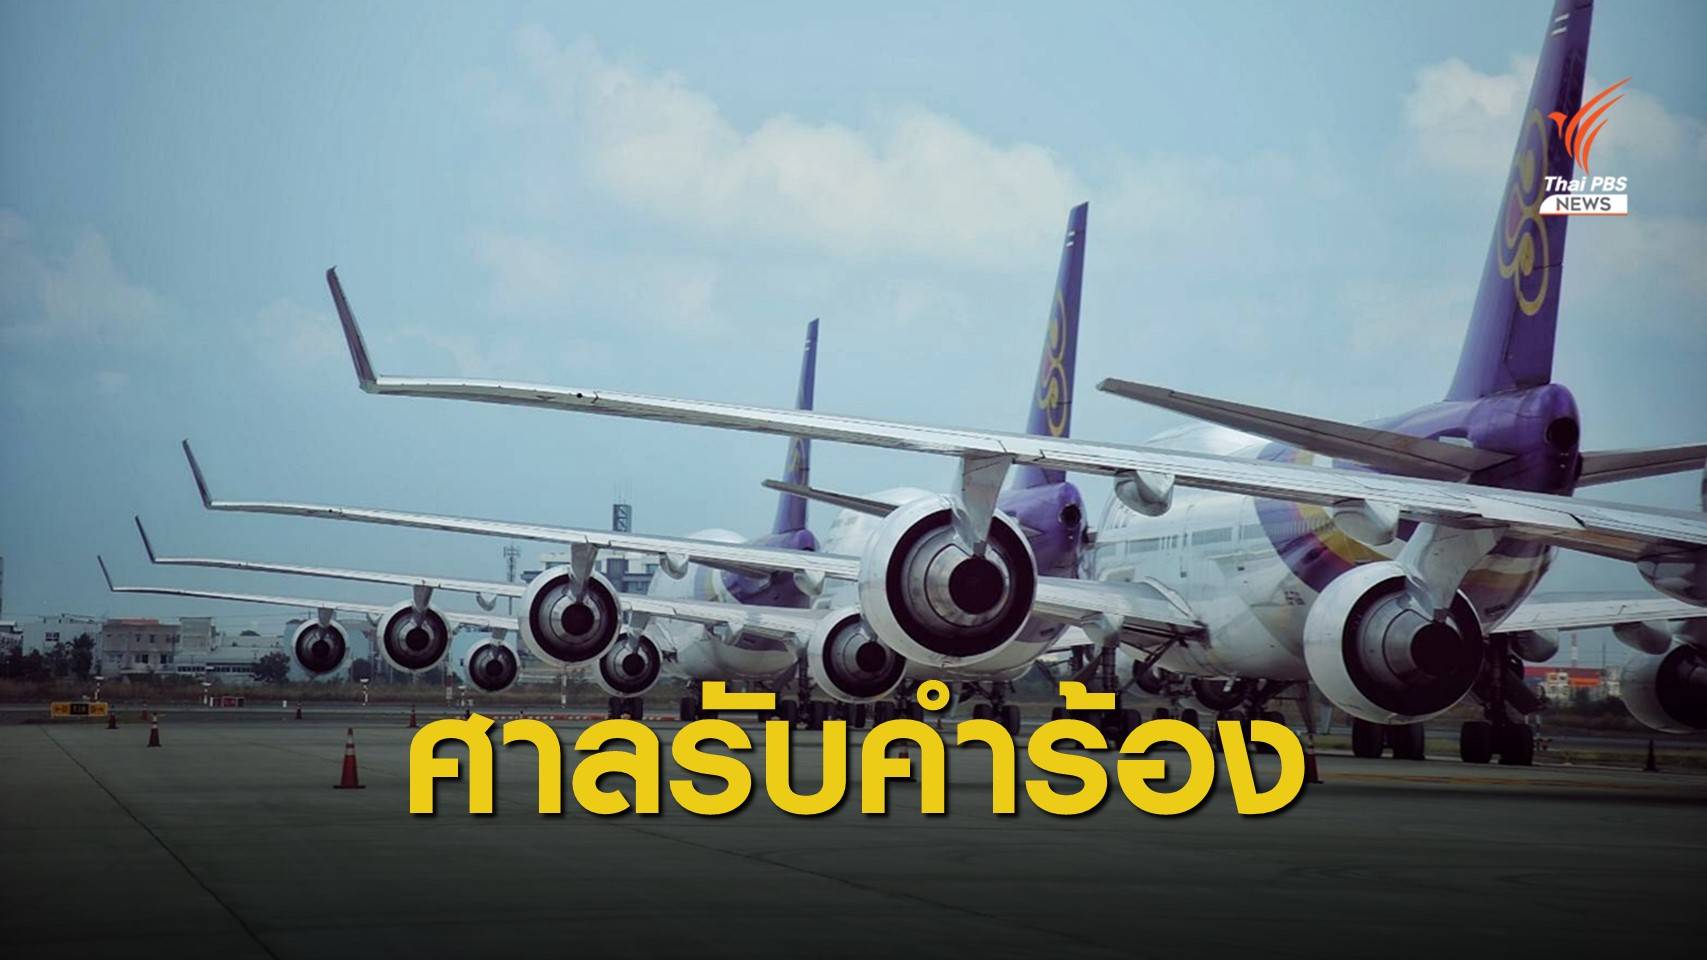 ศาลล้มละลายรับแผนฟื้นฟู "การบินไทย" นัดไต่สวน 17 ส.ค.นี้